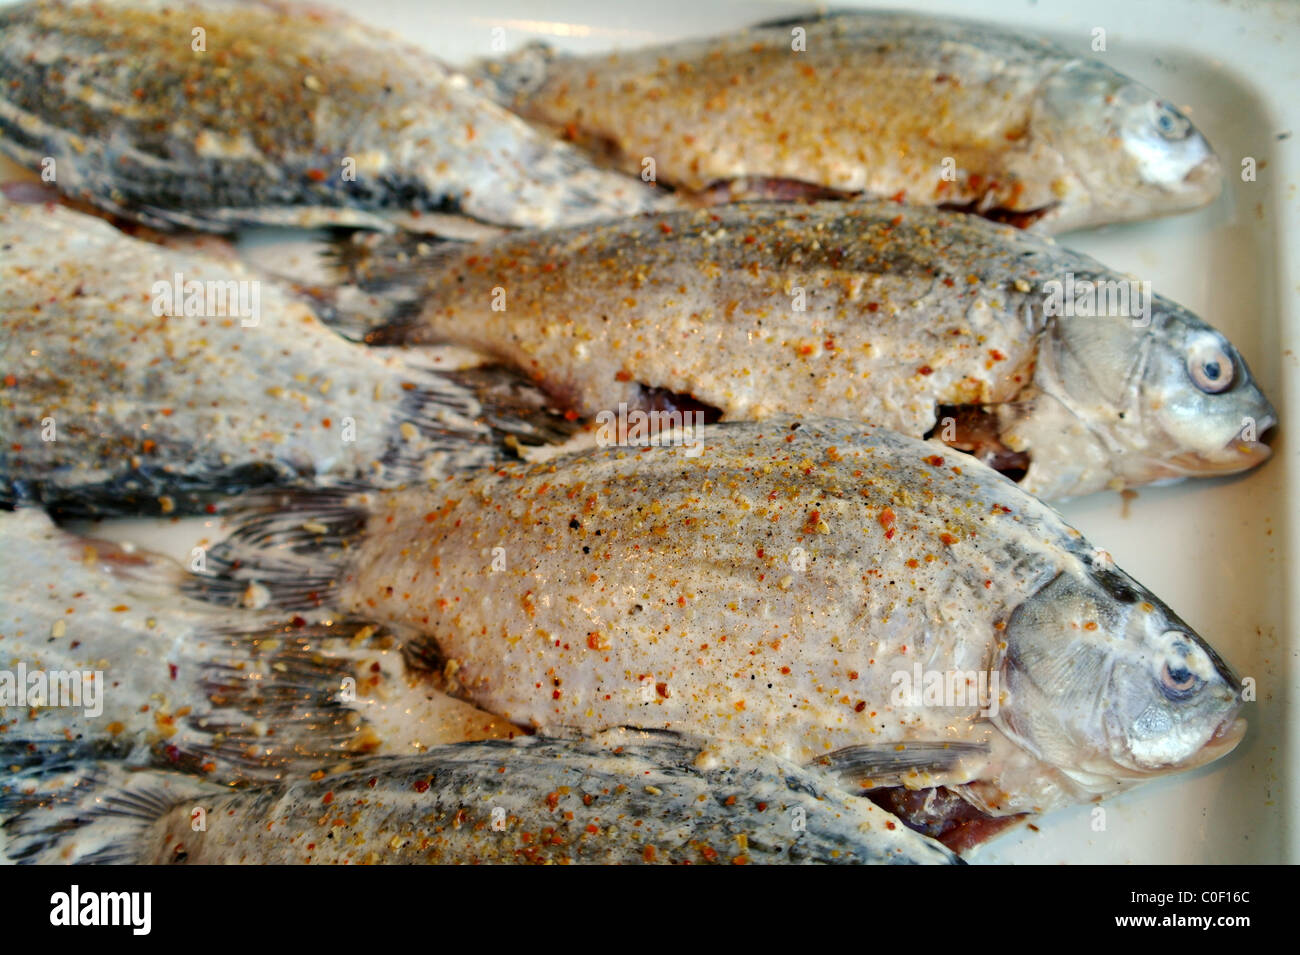 Le Carassin poisson brut sur le protwin, préparés à la poêle Banque D'Images